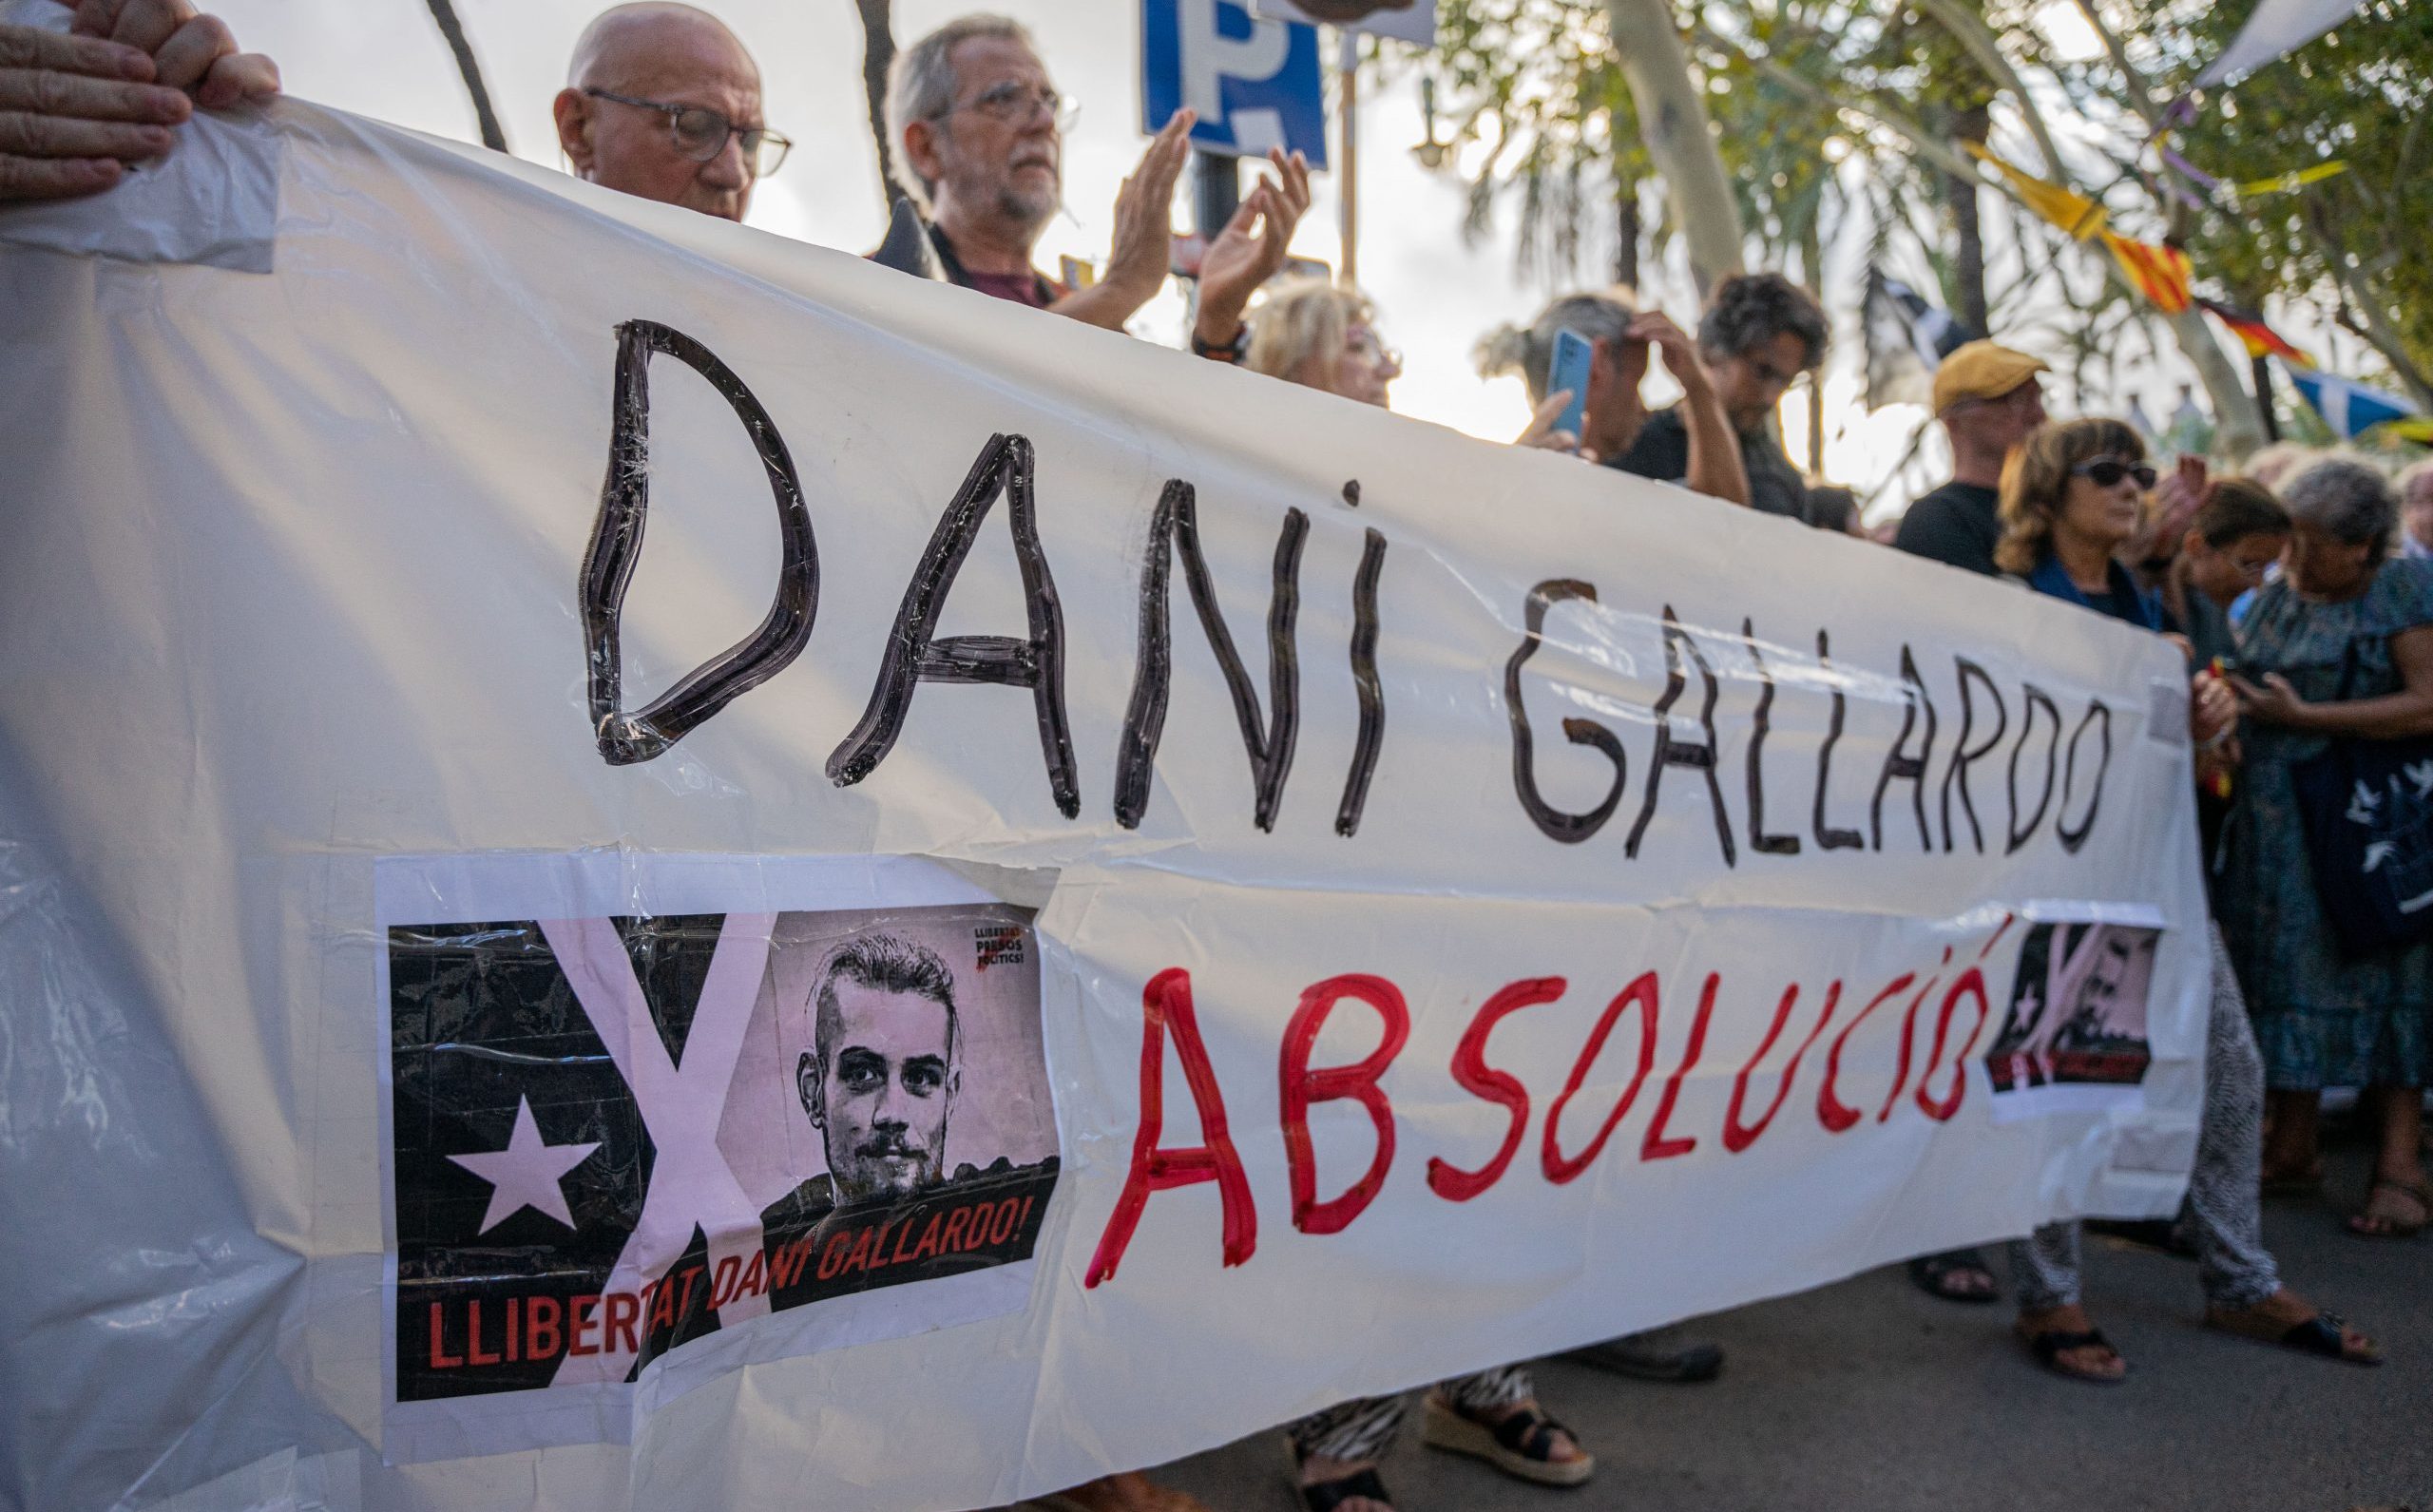 La Audiencia de Madrid ha dictaminado que el joven antifascista, Dani Gallardo, deberá entrar en prisión